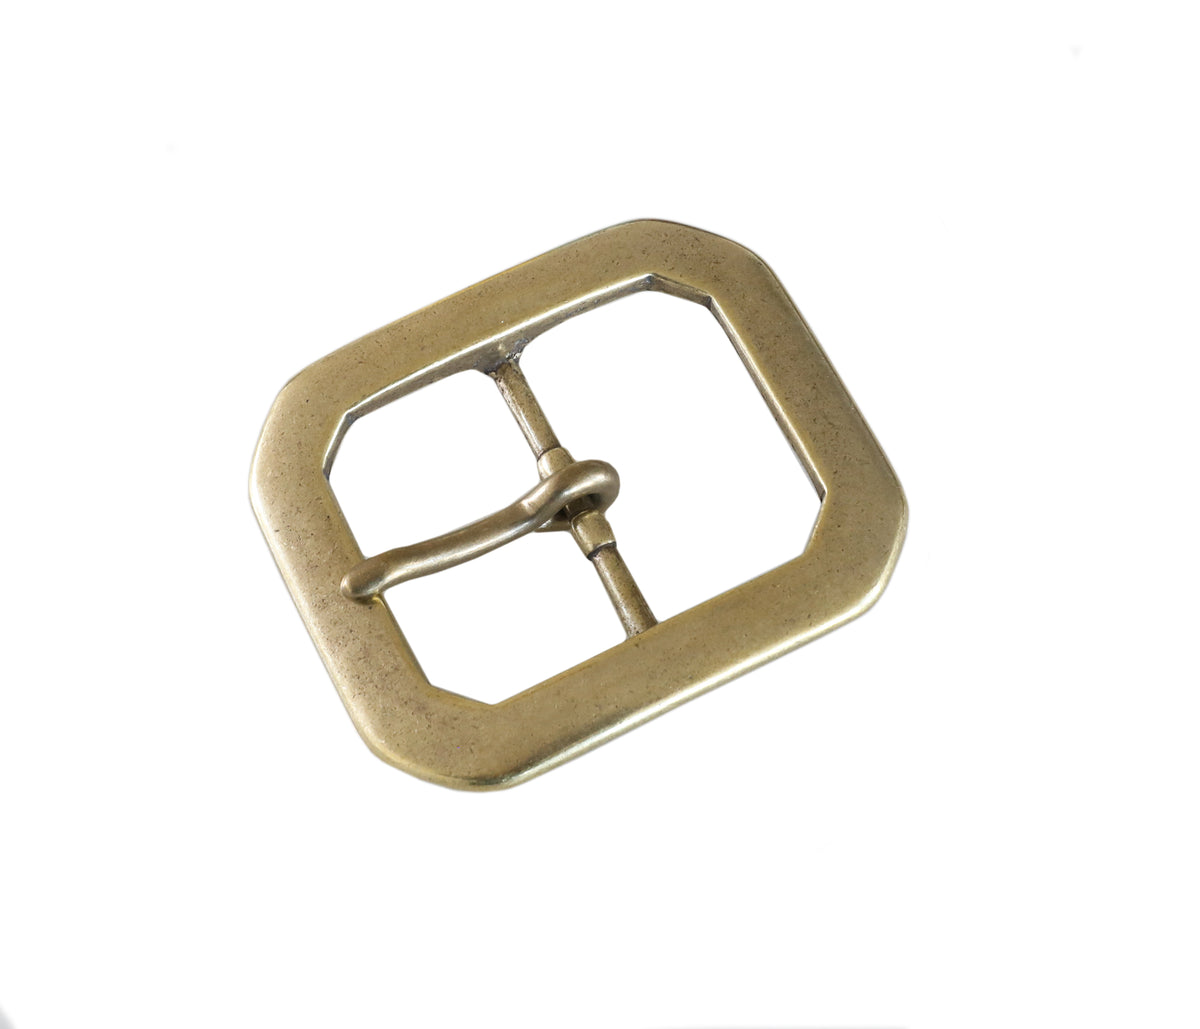 Japan Brass 🇯🇵 - "Octagonal" Belt Buckle (Solid Brass)